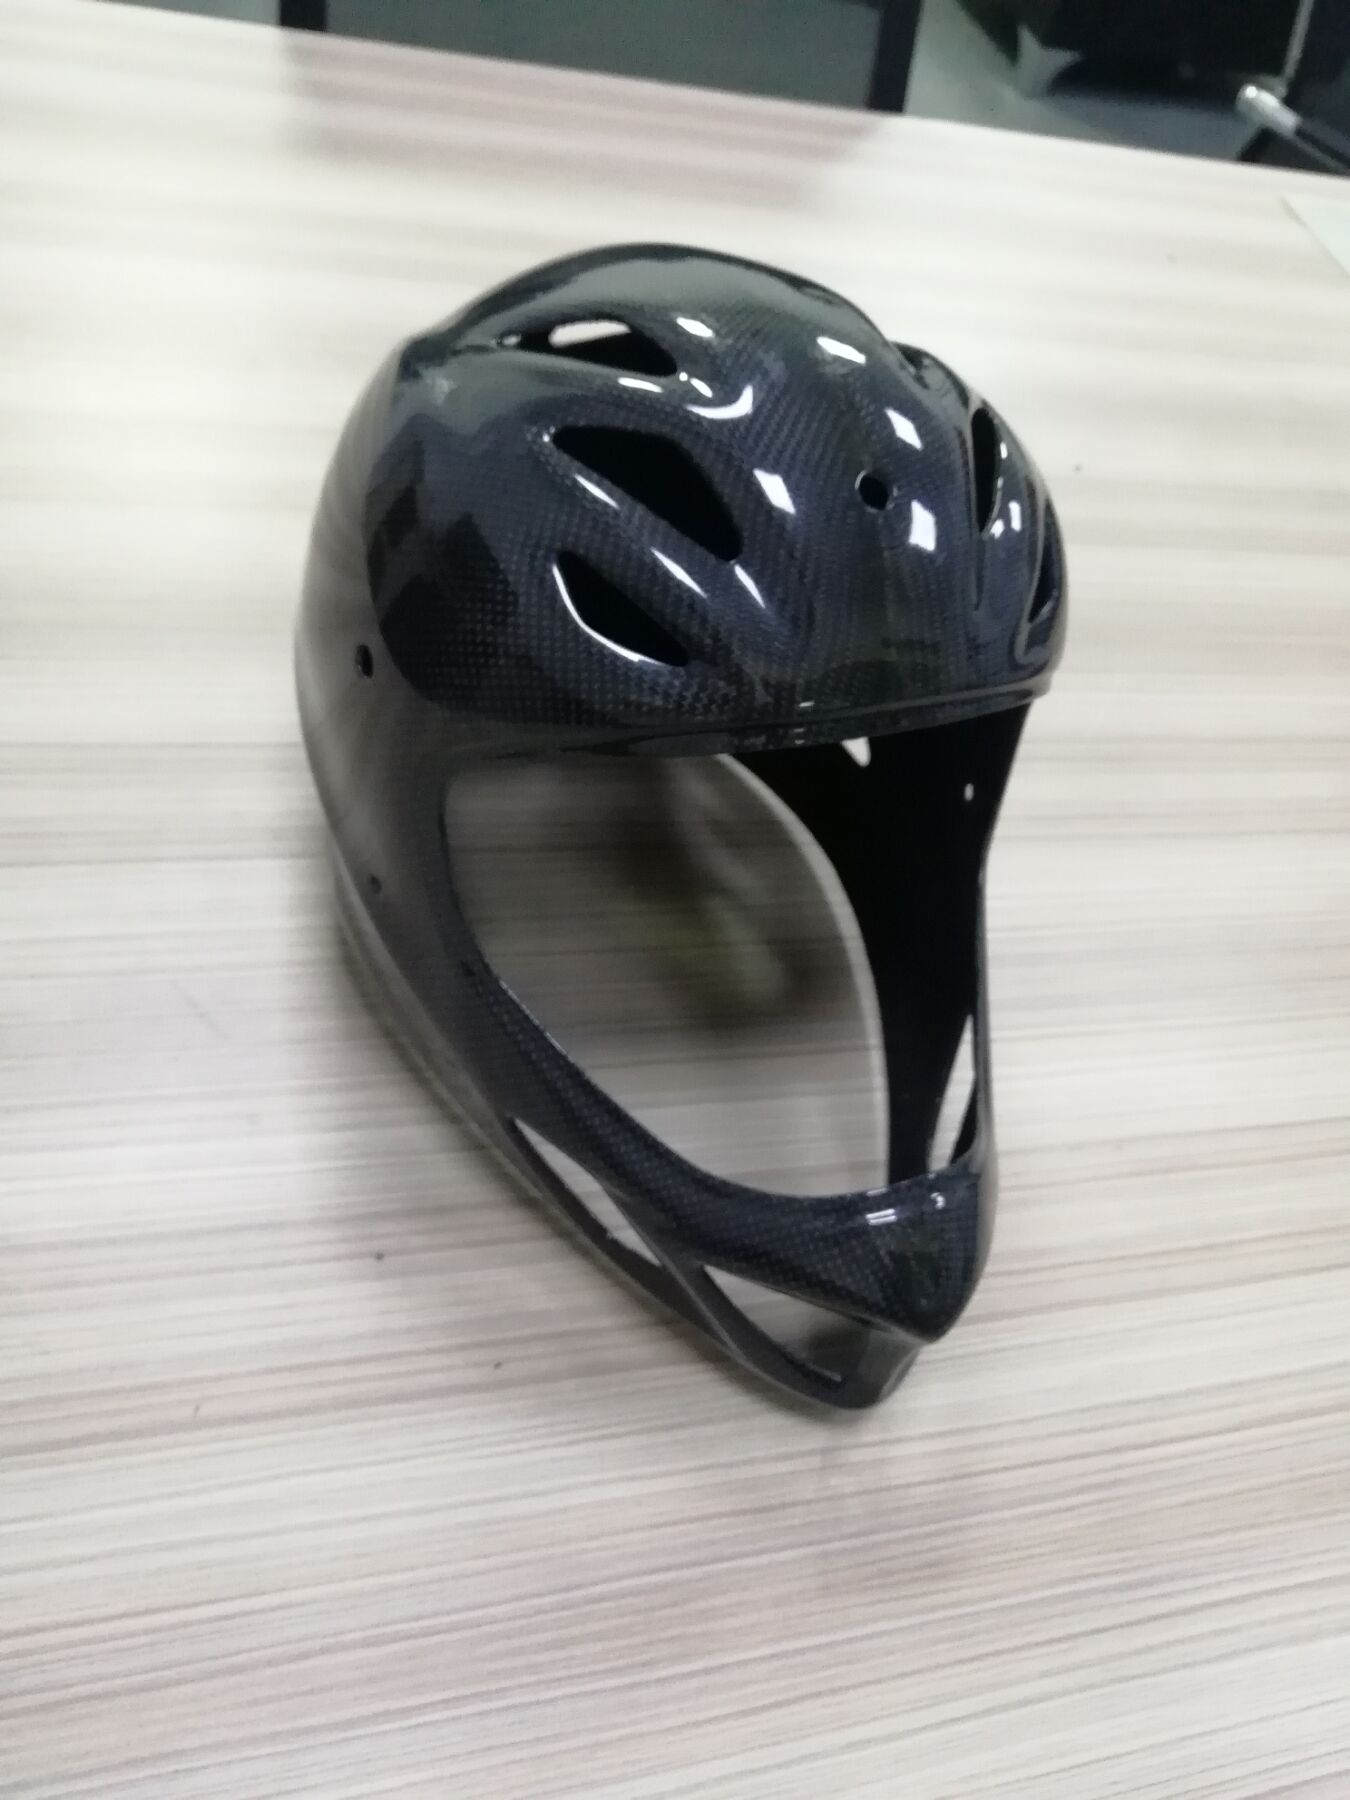 碳纤维头盔 / 碳纤维头盔 / 碳纤维头盔 /湖南瑞蒙新材料